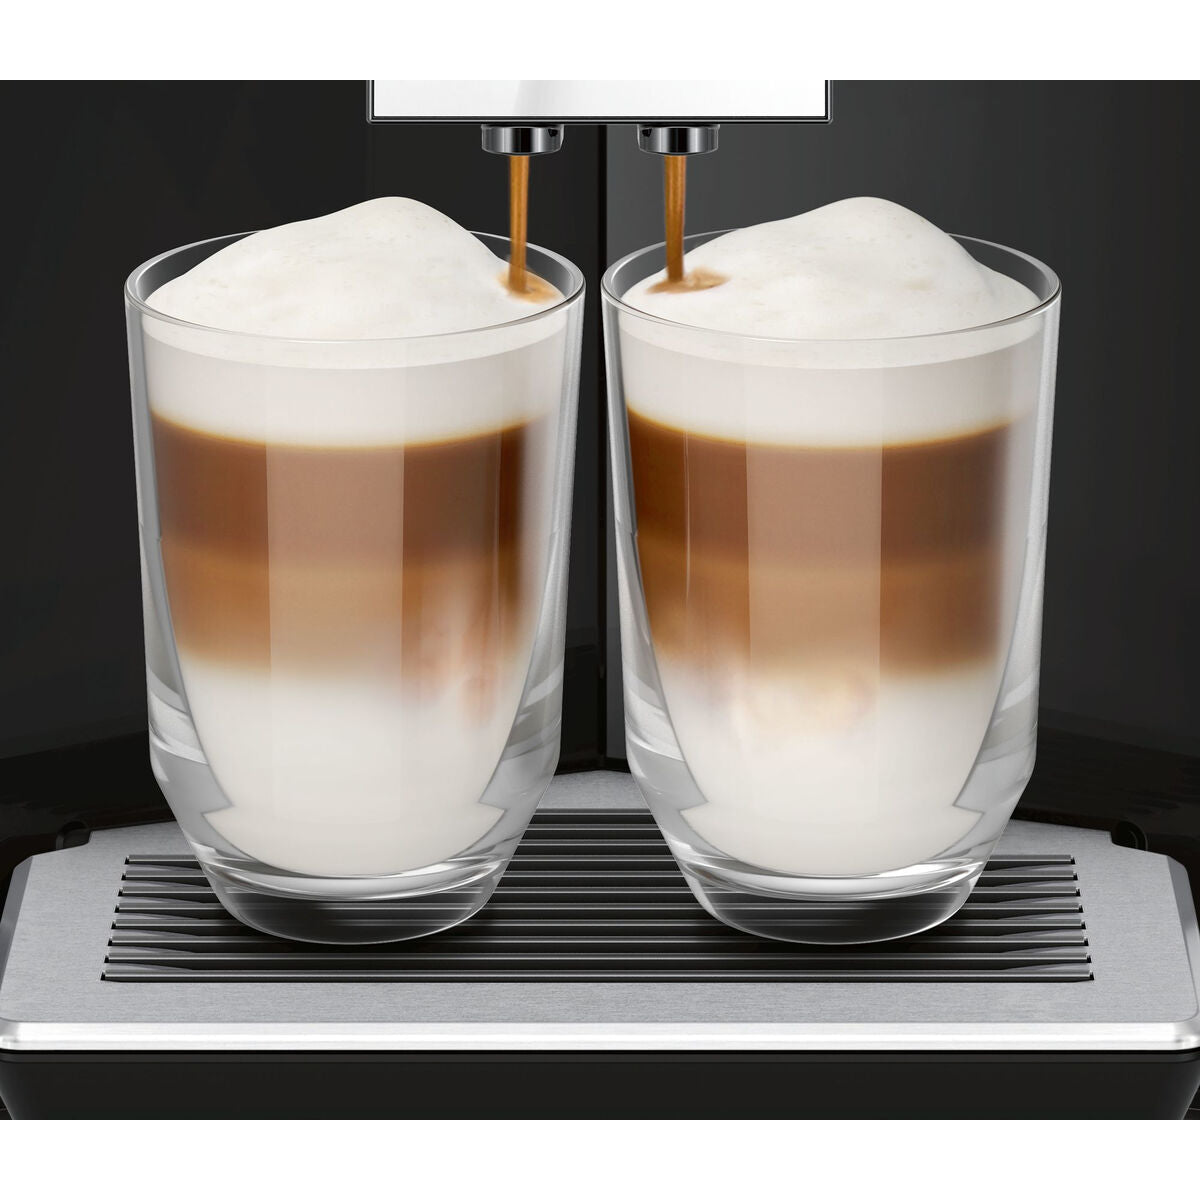 Superautomatische Kaffeemaschine Siemens AG s700 Schwarz Ja 1500 W 19 bar 2,3 L 2 Kopper